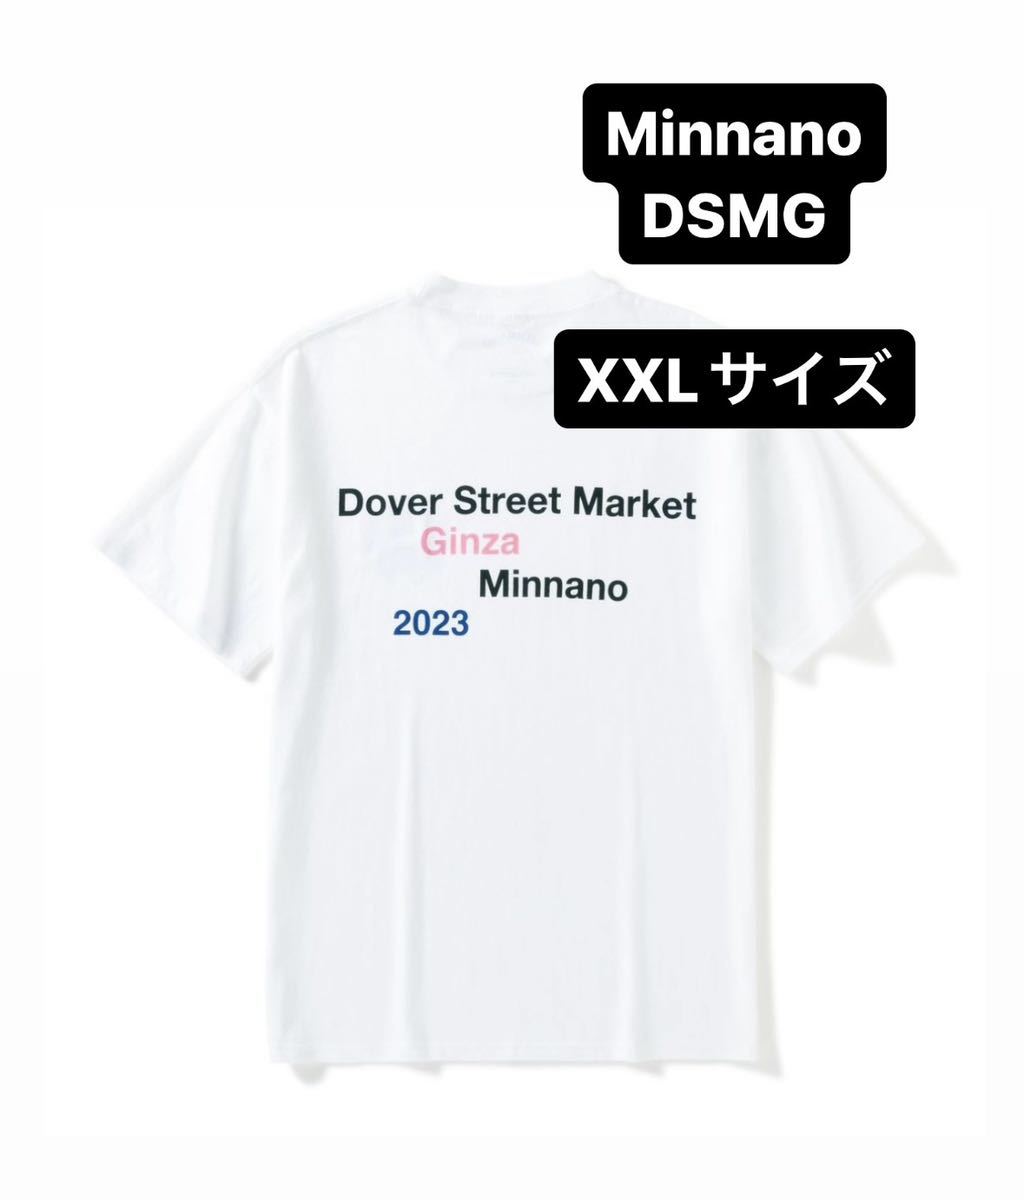 満点の MIN-NANO ドーバーストリートマーケット XXLサイズ コラボ